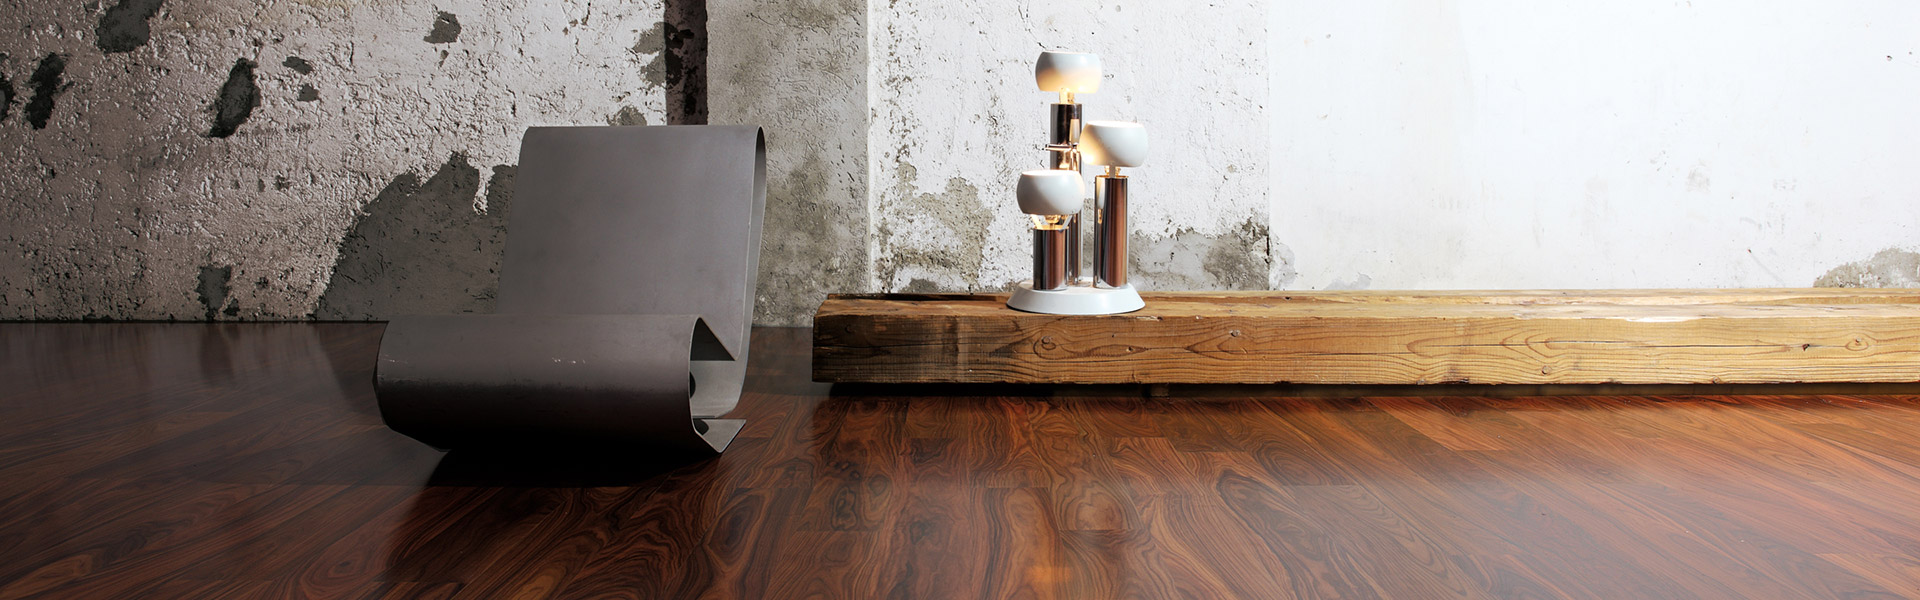 Fußboden aus Holz - edel und elegant